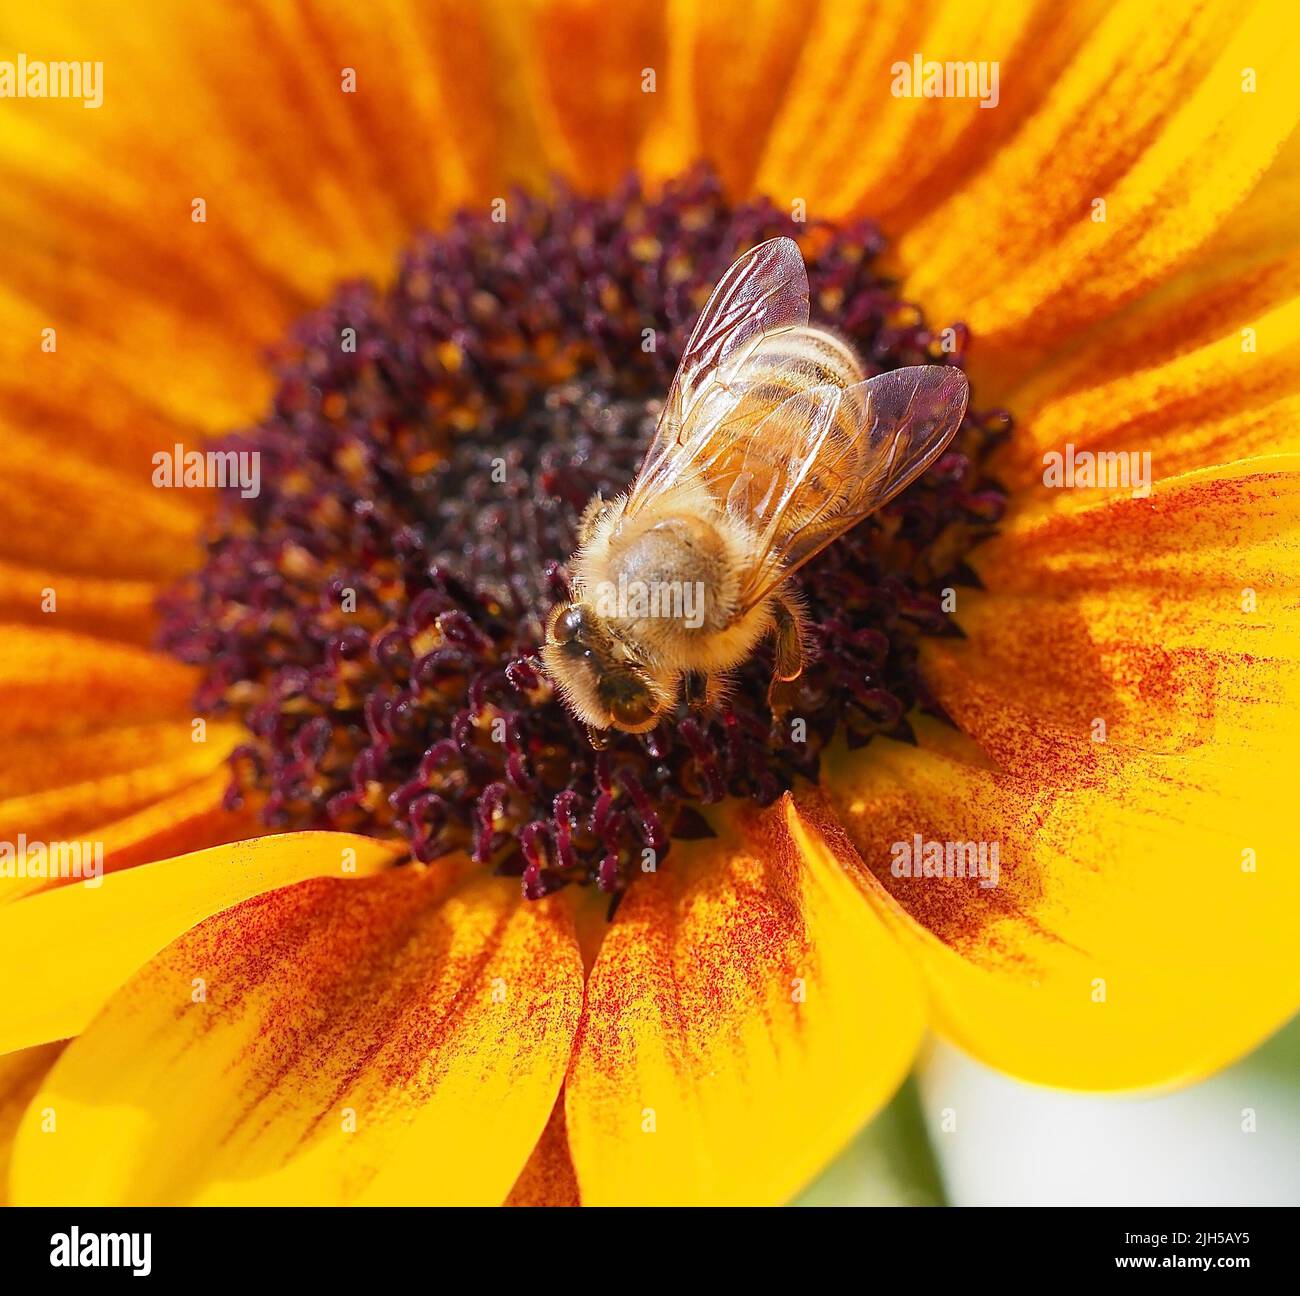 Honigbiene auf Sonnenblume, Biene Stock Photo